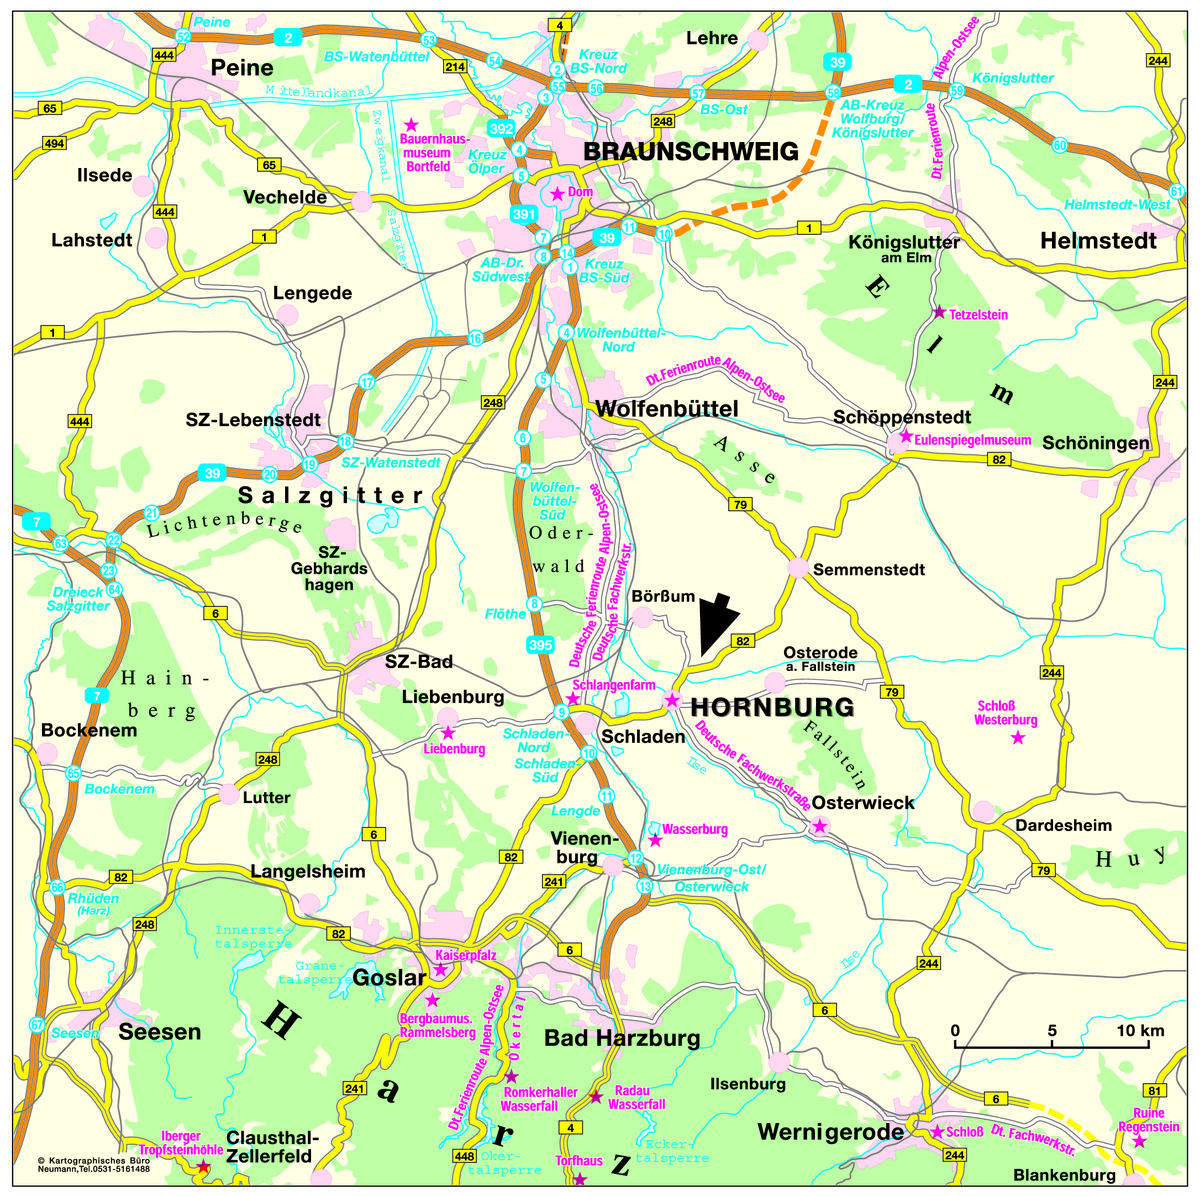 Bild vergrößern: Anreise - Hornburg und Umgebung